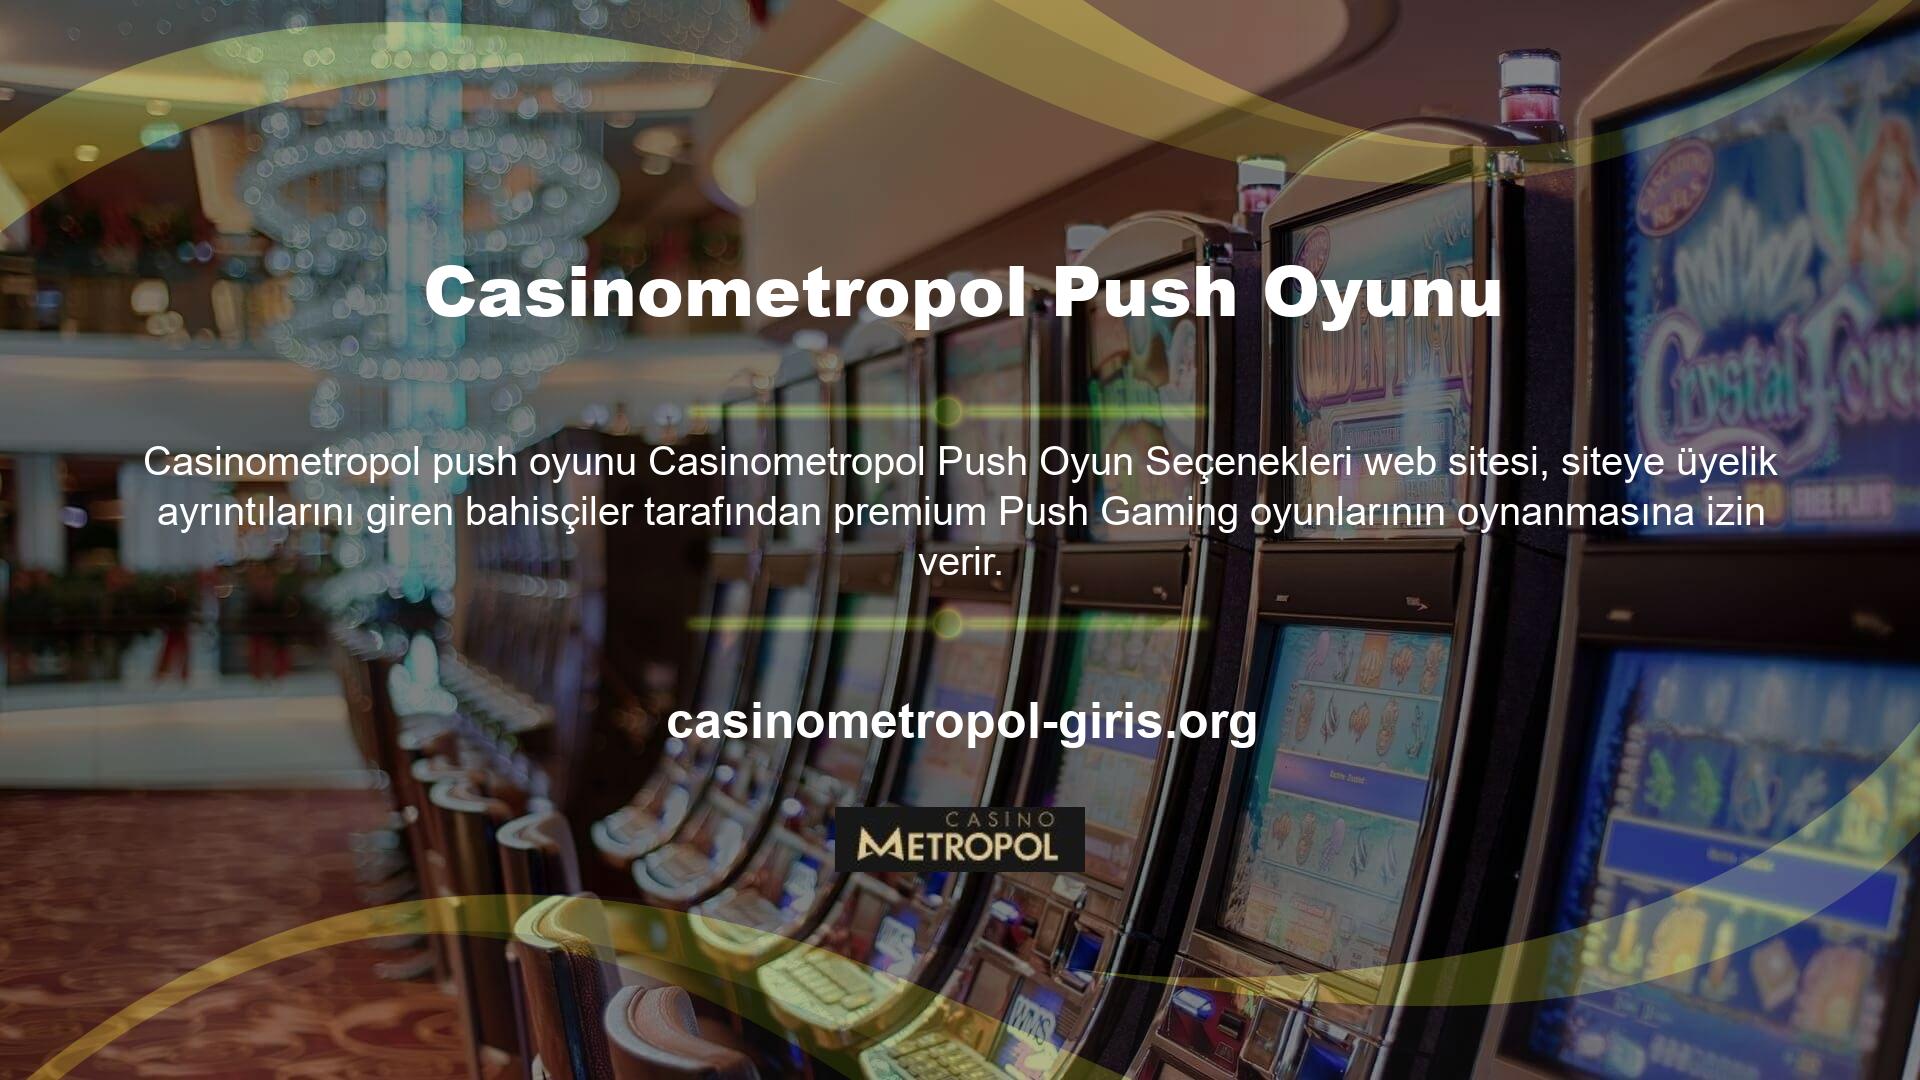 Yüksek kaliteli grafiklere sahip ve mobil cihazlara daha uygun olan oyunu Push Gaming geliştirdi Casinometropol web sitesinde çok iyi oyunlar mevcut